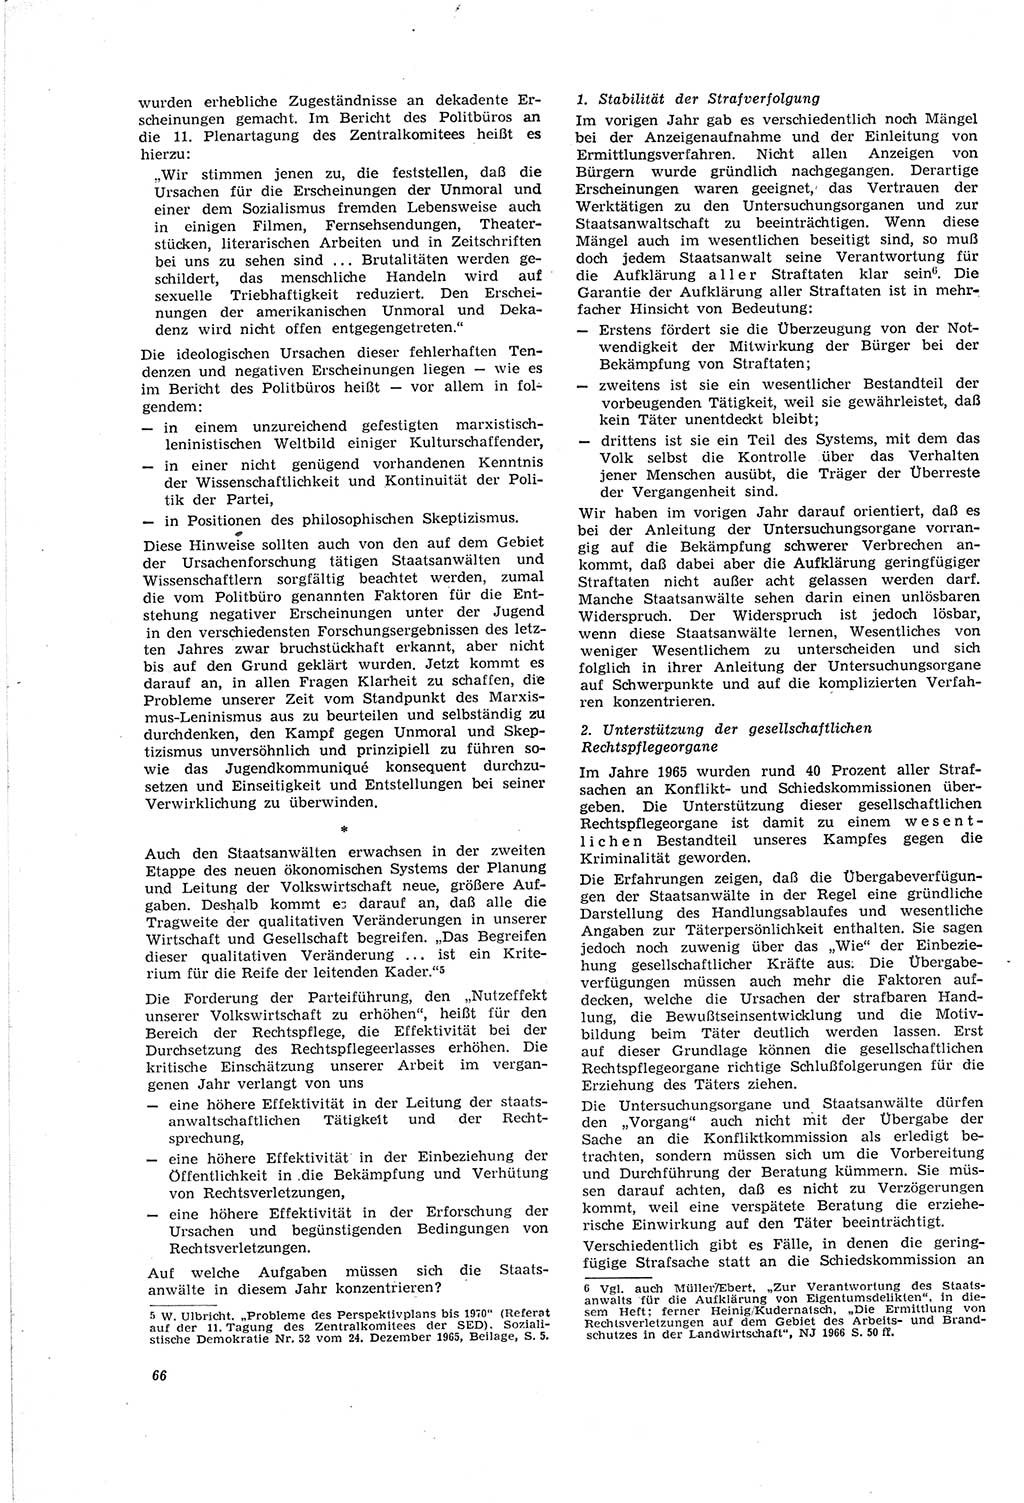 Neue Justiz (NJ), Zeitschrift für Recht und Rechtswissenschaft [Deutsche Demokratische Republik (DDR)], 20. Jahrgang 1966, Seite 66 (NJ DDR 1966, S. 66)